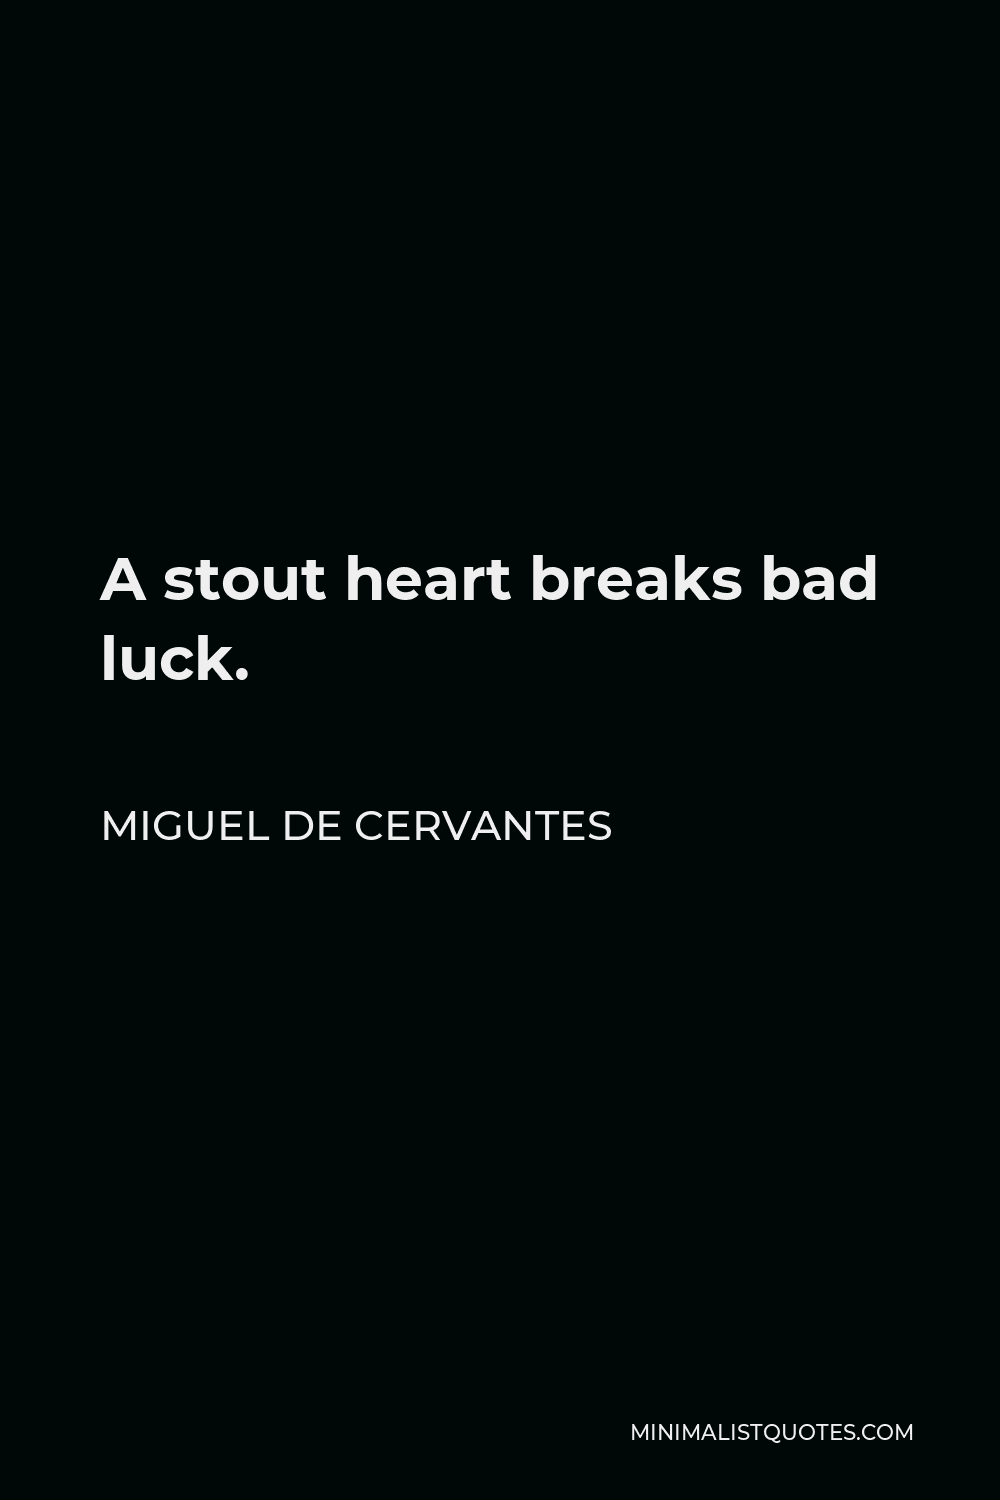 Miguel de Cervantes Quote - A stout heart breaks bad luck.